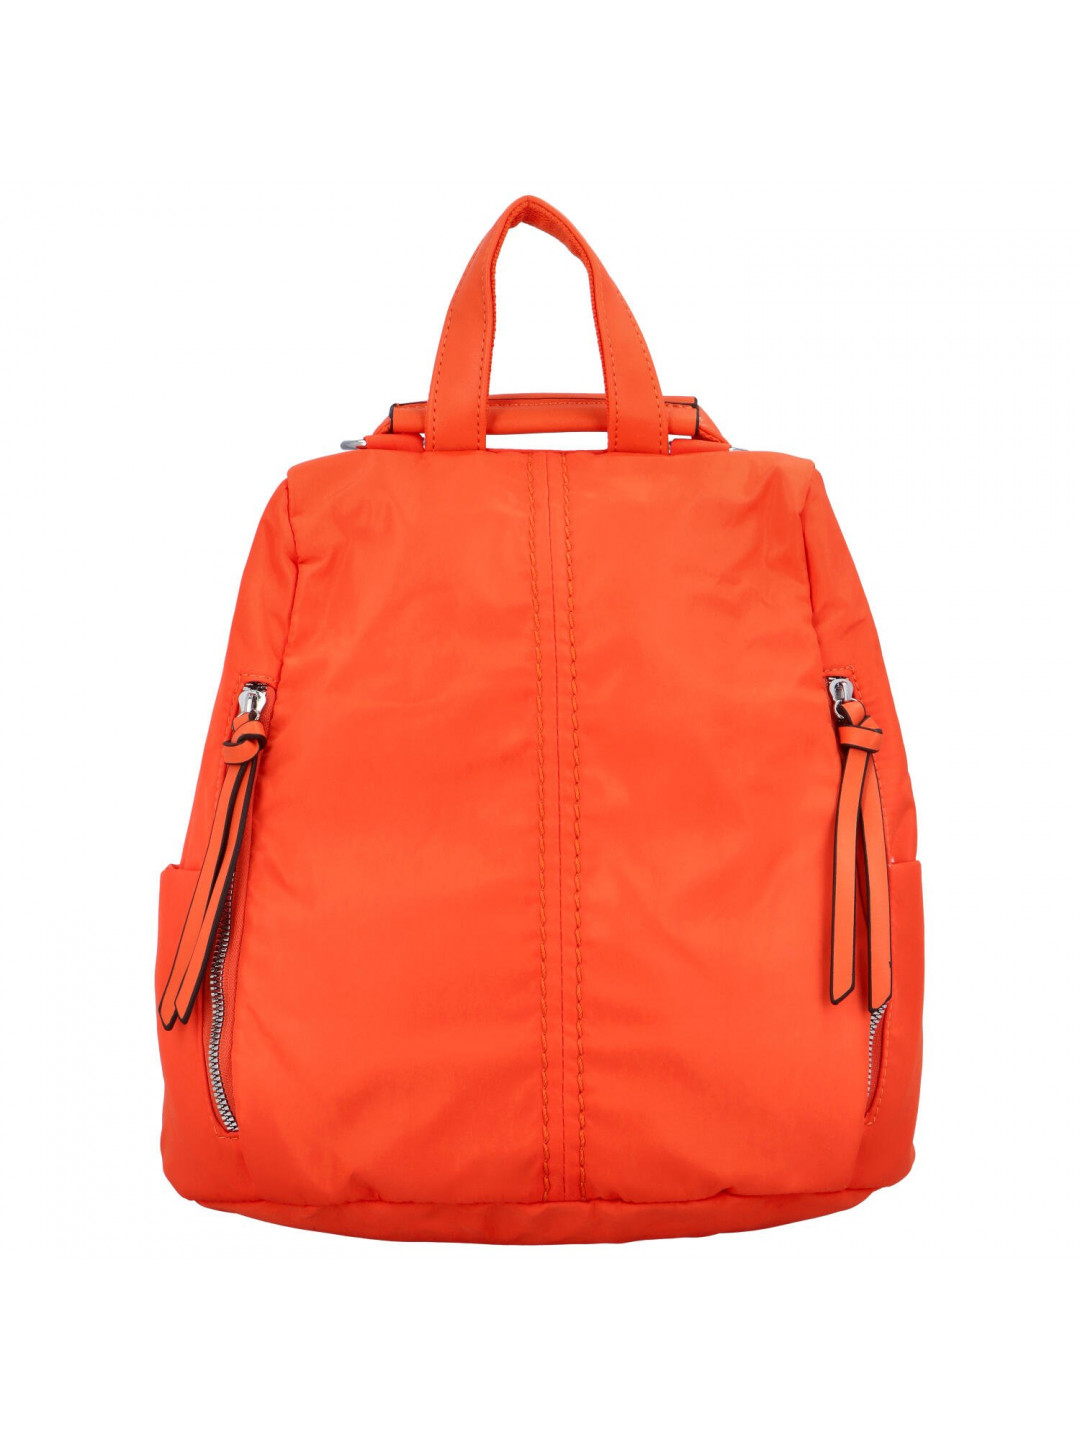 Stylová dámská kabelka batoh Elvíra oranžová